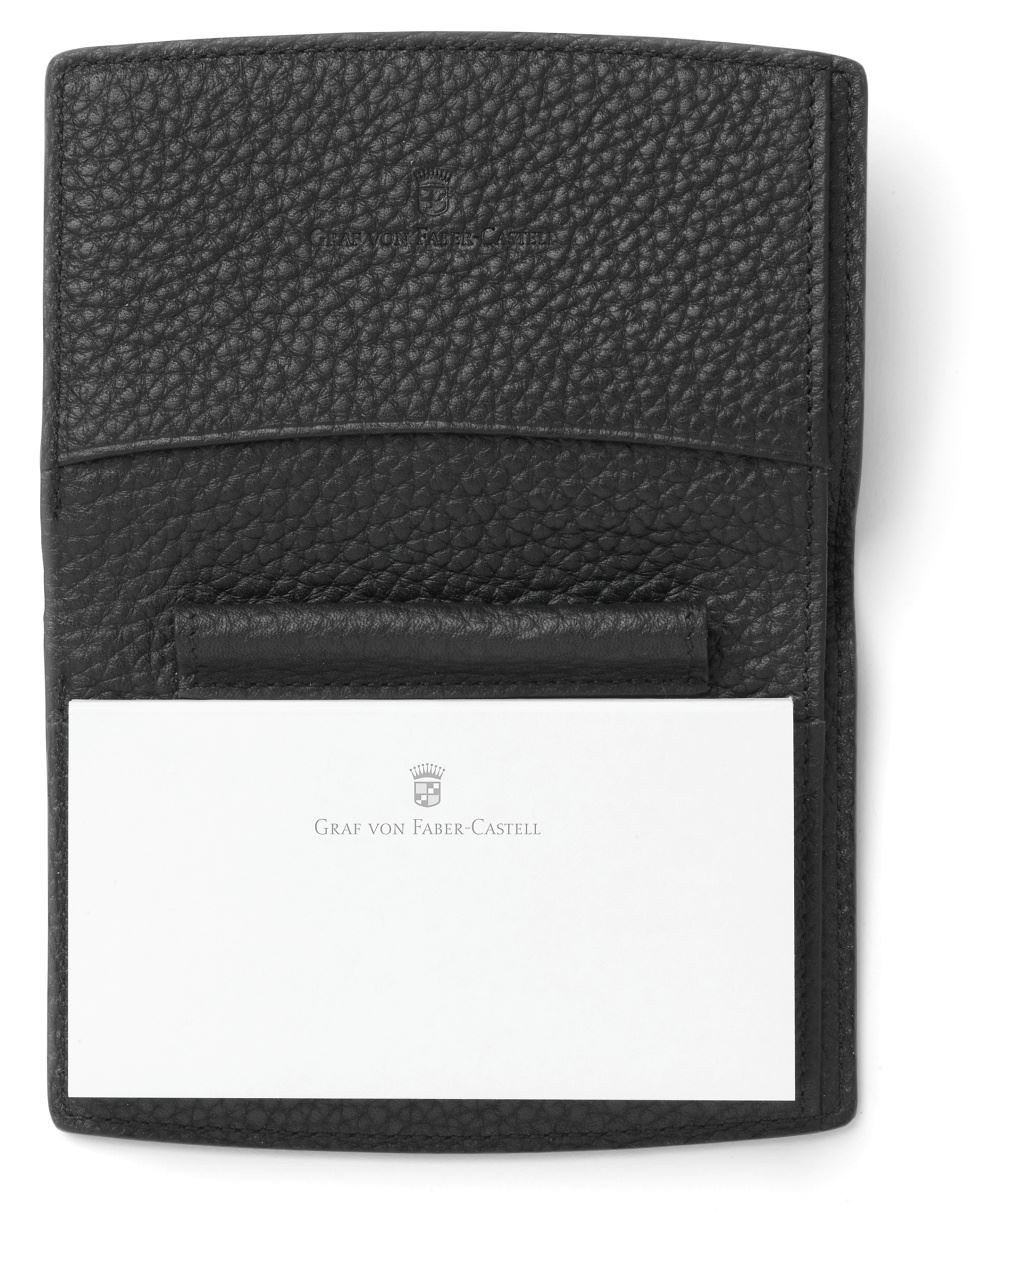 Graf-von-Faber-Castell - Notepad Cashmere, black